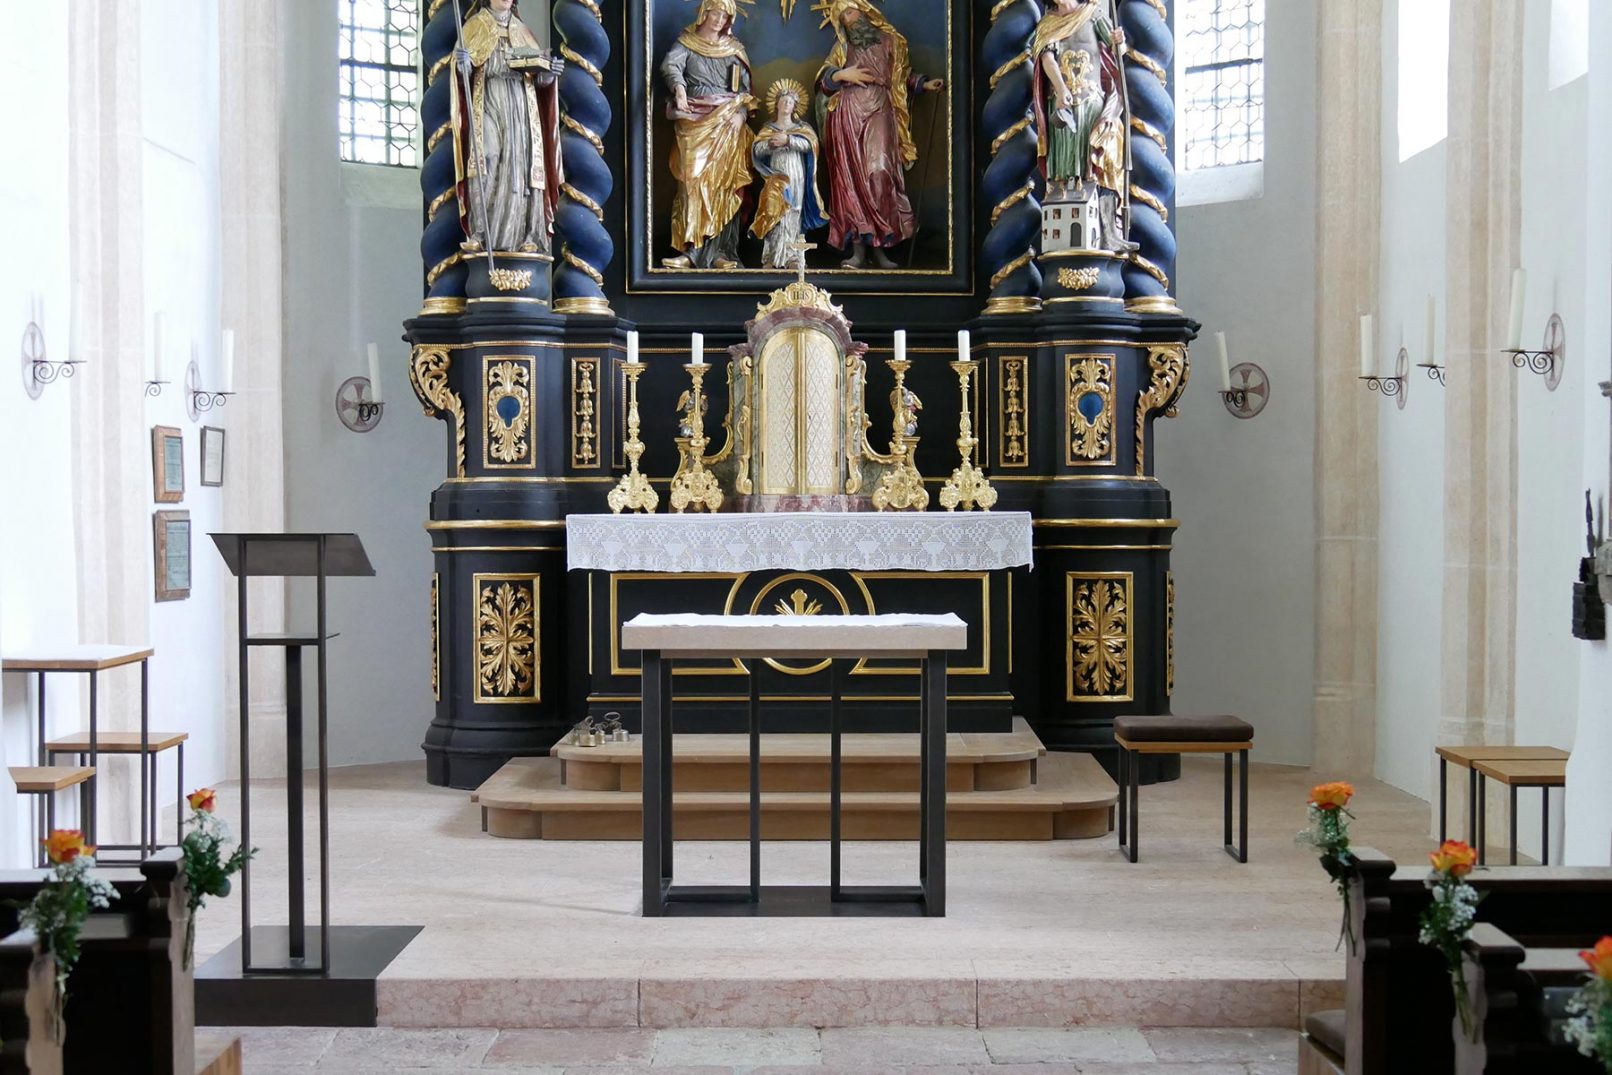 Neugestaltung Altarraum St. Vitus und Anna mit Altar, Ambo, Kerzenleuchter, Sedilien und Kredenztisch.